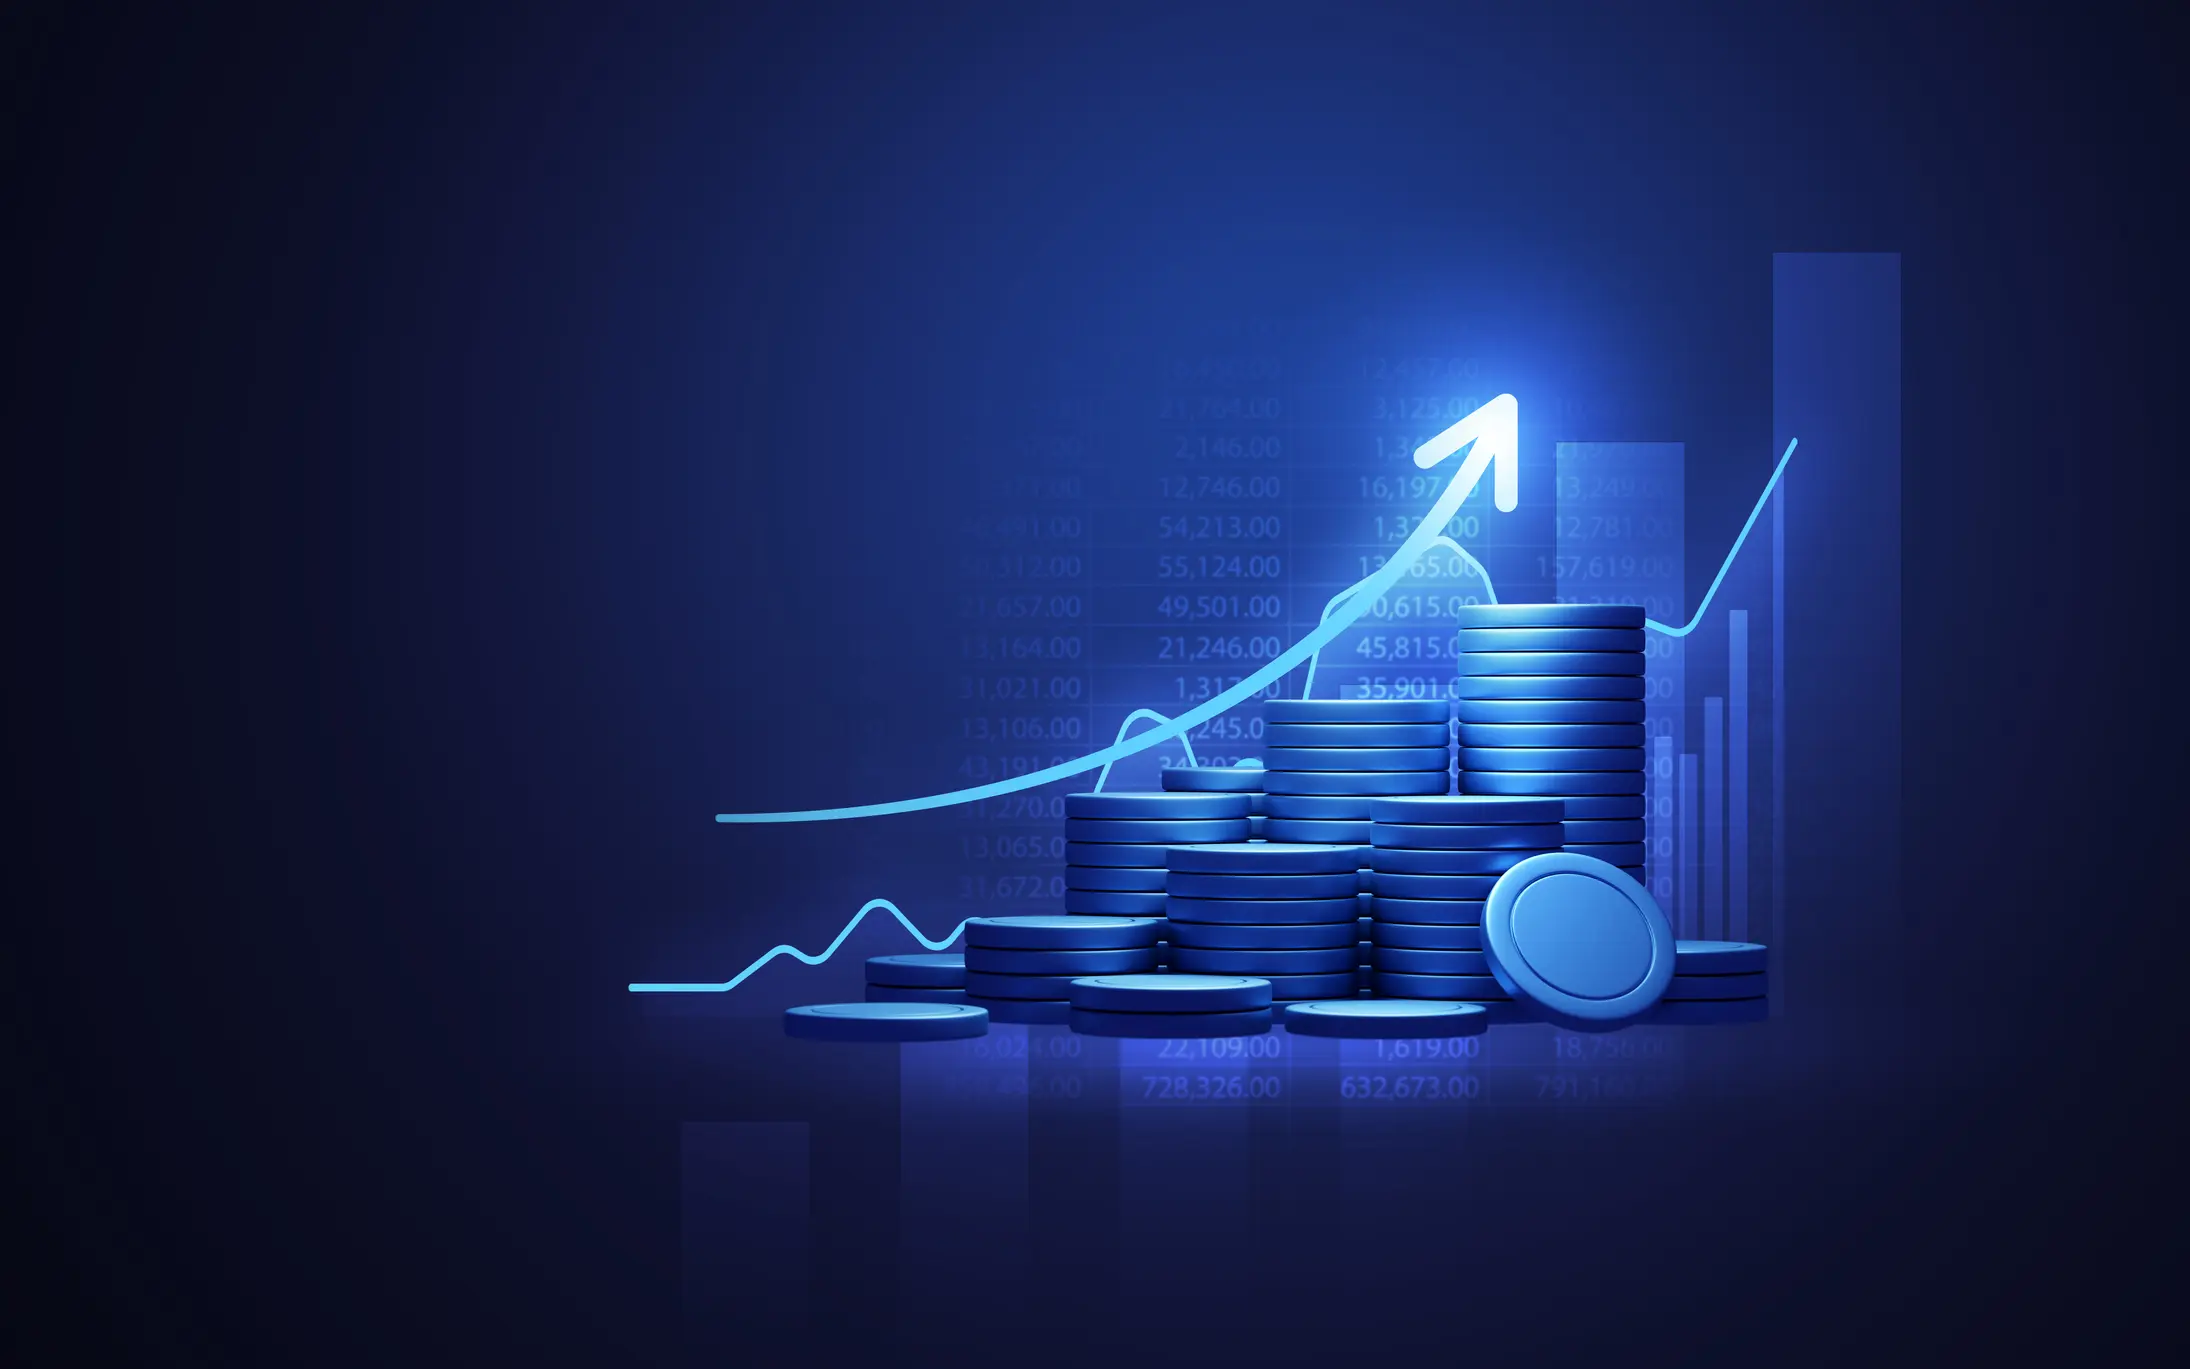 gráfico financeiro azul, com seta para cima e moedas com dados financeiros de crescimento ao fundo, utilizando barras e números.